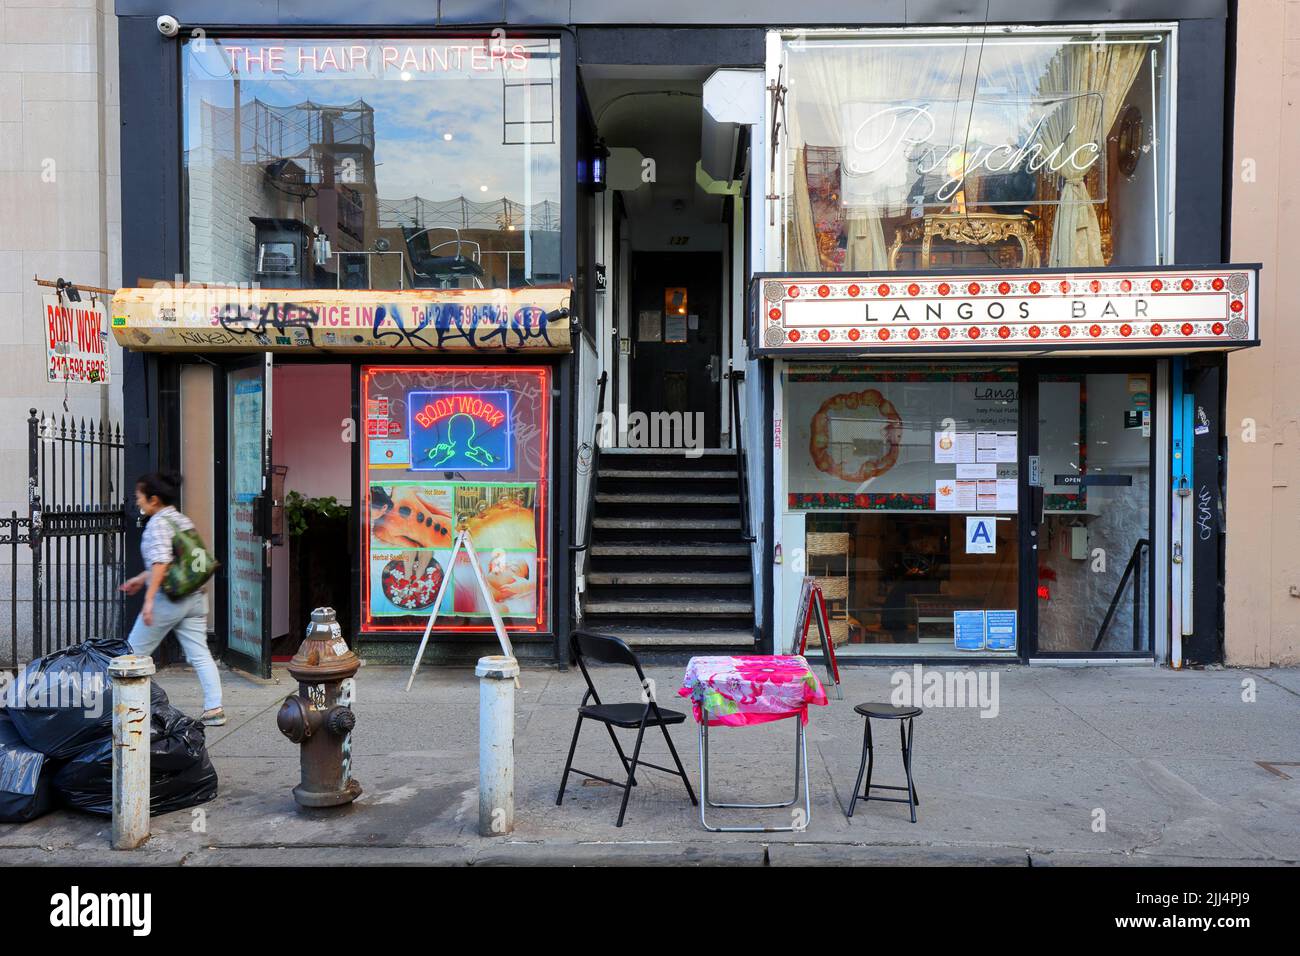 Langos Bar, The Hair Peintres, body work, 137 Rivington St, New York, Photo de la boutique NYC des entreprises du Lower East Side de Manhattan Banque D'Images